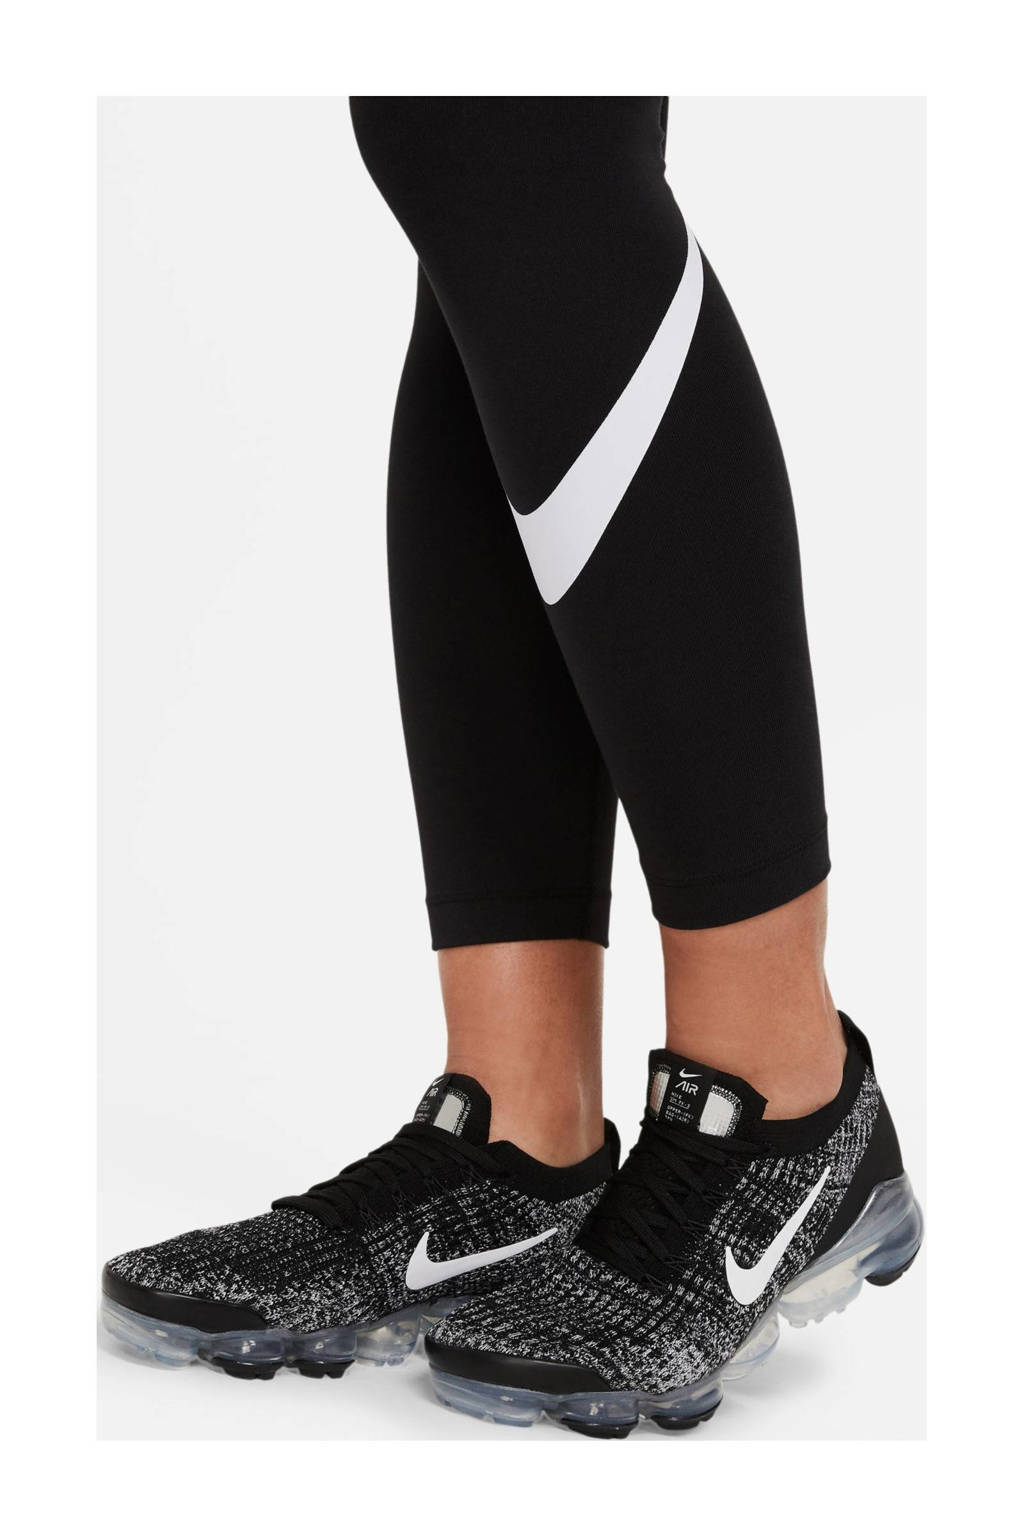 Nike legging zwart/wit, Zwart/wit